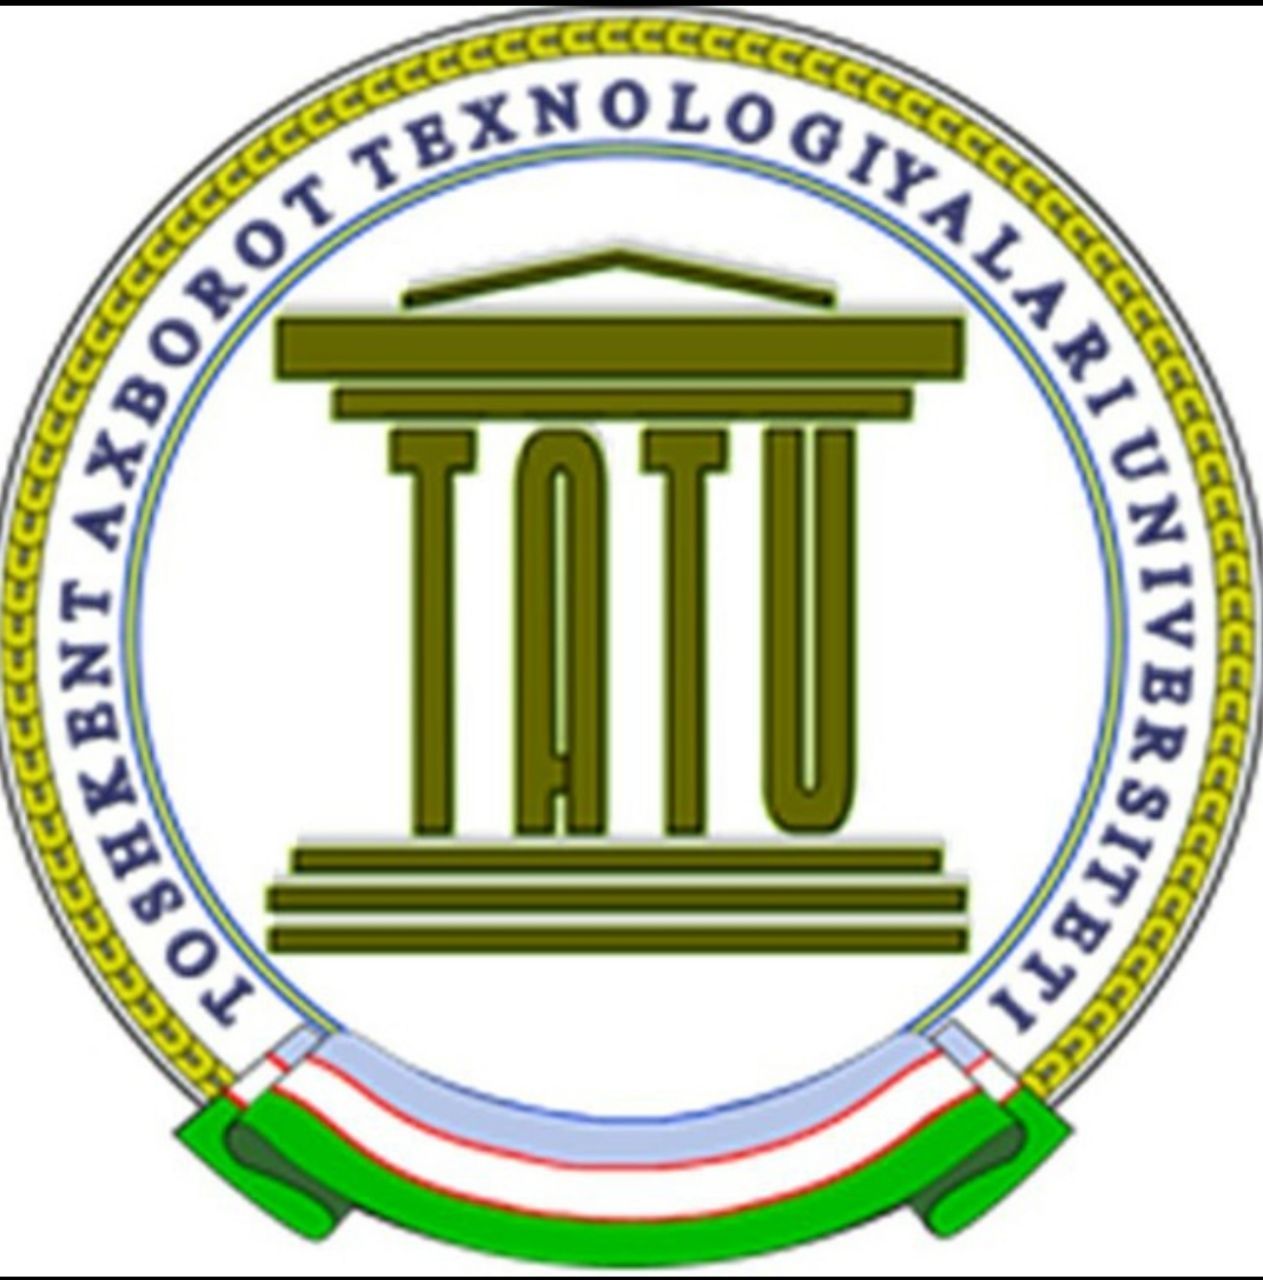 Ташкентский университет информационных технологий эмблема